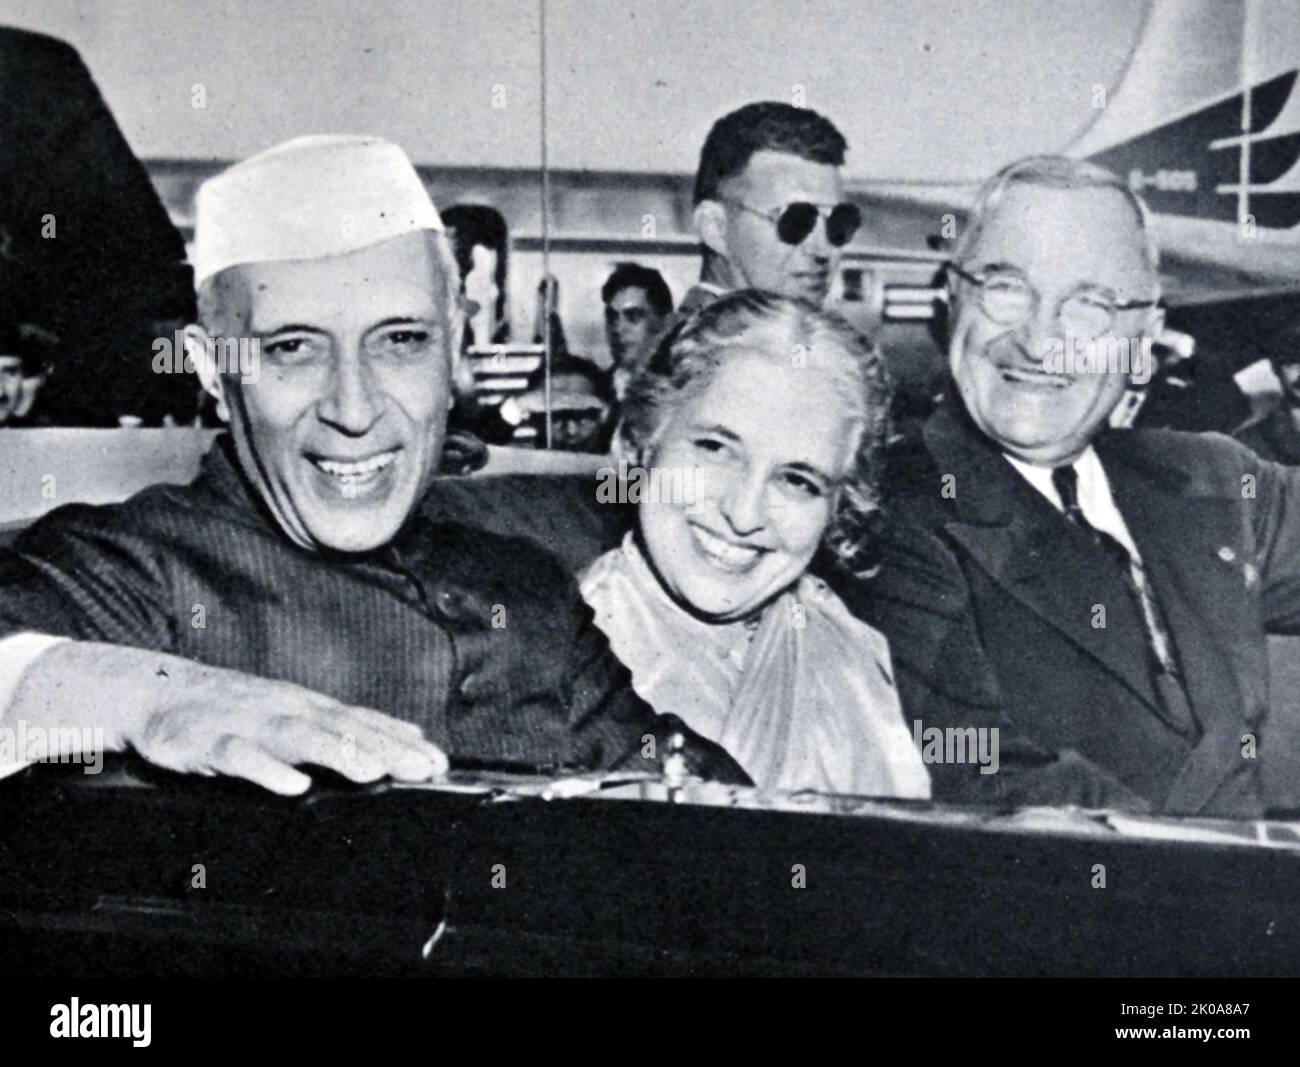 Il primo ministro indiano Jawaharlal Nehru con la sorella e il presidente Truman a Washington. Jawaharlal Nehru (14 novembre 1889 – 27 maggio 1964) è stato un . Nehru fu il leader principale del movimento nazionalista indiano negli anni '1930s e '1940s. Dopo l'indipendenza dell'India nel 1947, ha servito come primo ministro del paese per 17 anni. Truman (8 maggio 1884 33rd – 26 1945 dicembre 1972 1953) è stato un . Membro a vita del Partito democratico, in precedenza servì come un Foto Stock